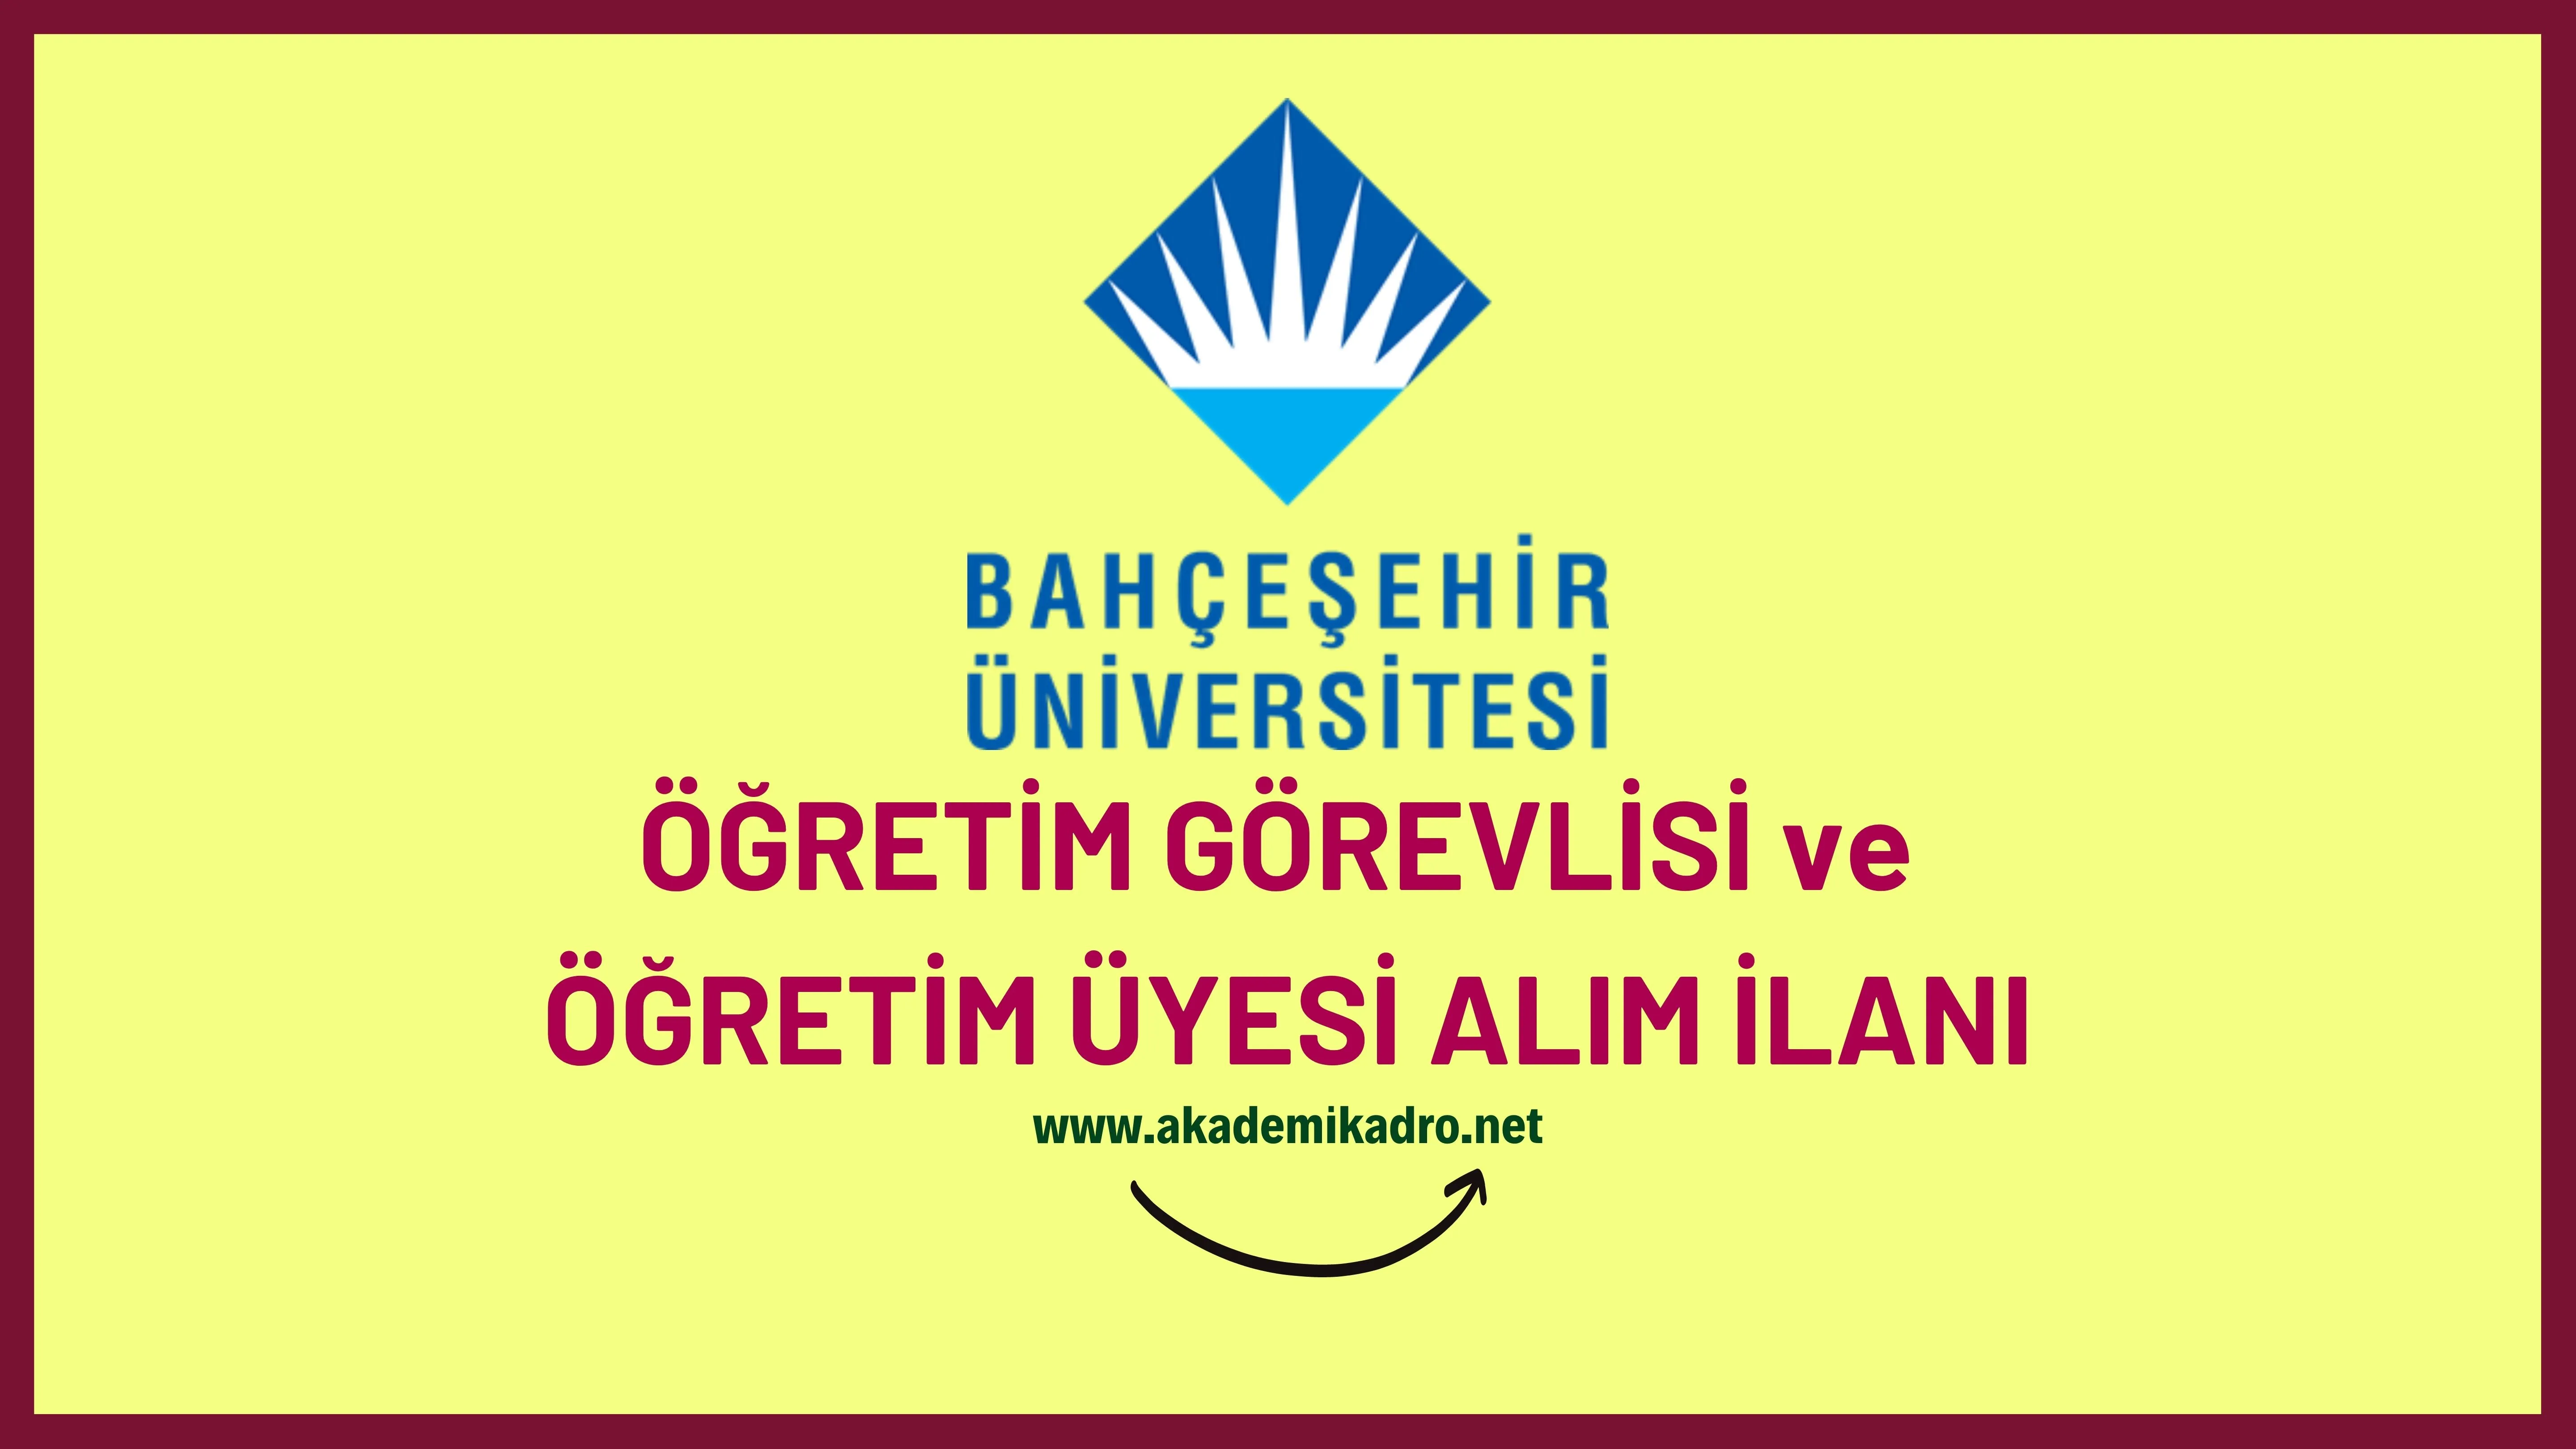 Bahçeşehir Üniversitesi 26 Öğretim görevlisi ve 74 Öğretim üyesi alacak.